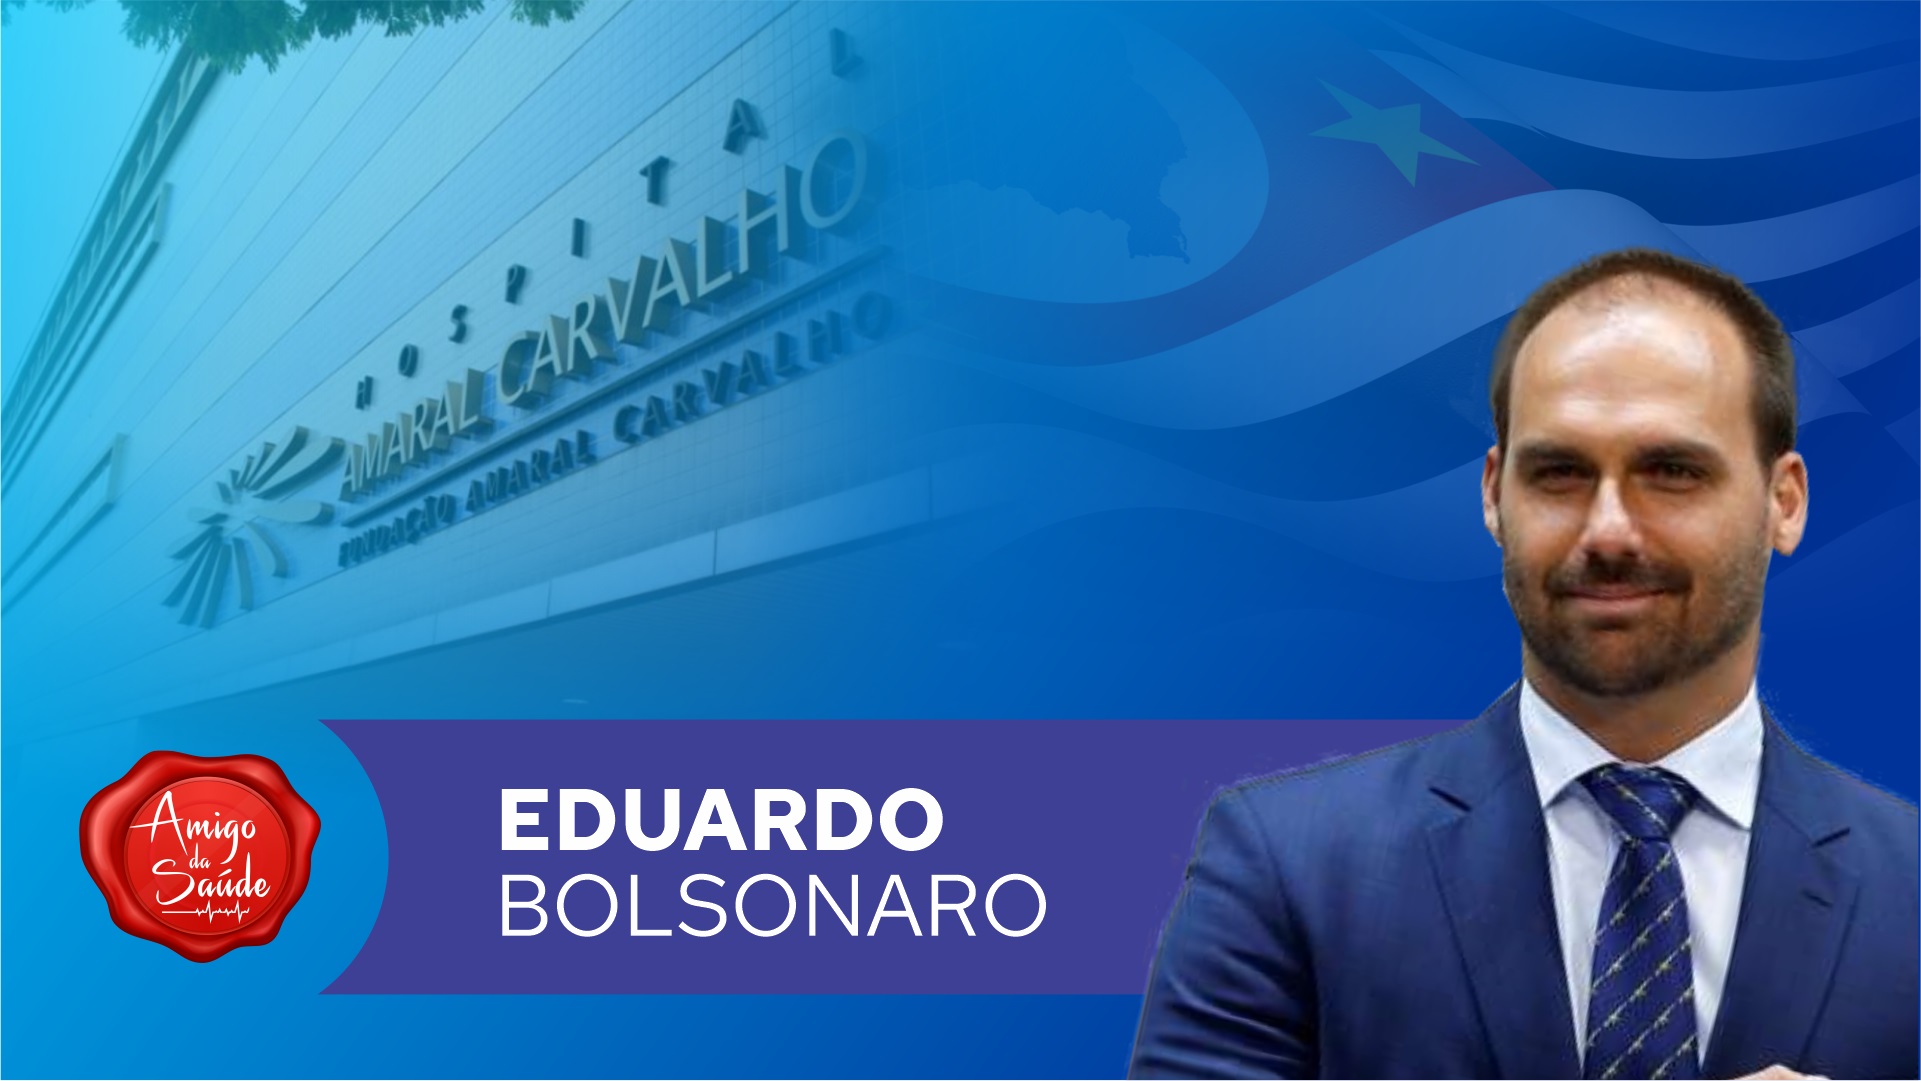 deputado-eduardo-bolsonaro-apoia-o-hospital-amaral-carvalho - Acao Comunicativa